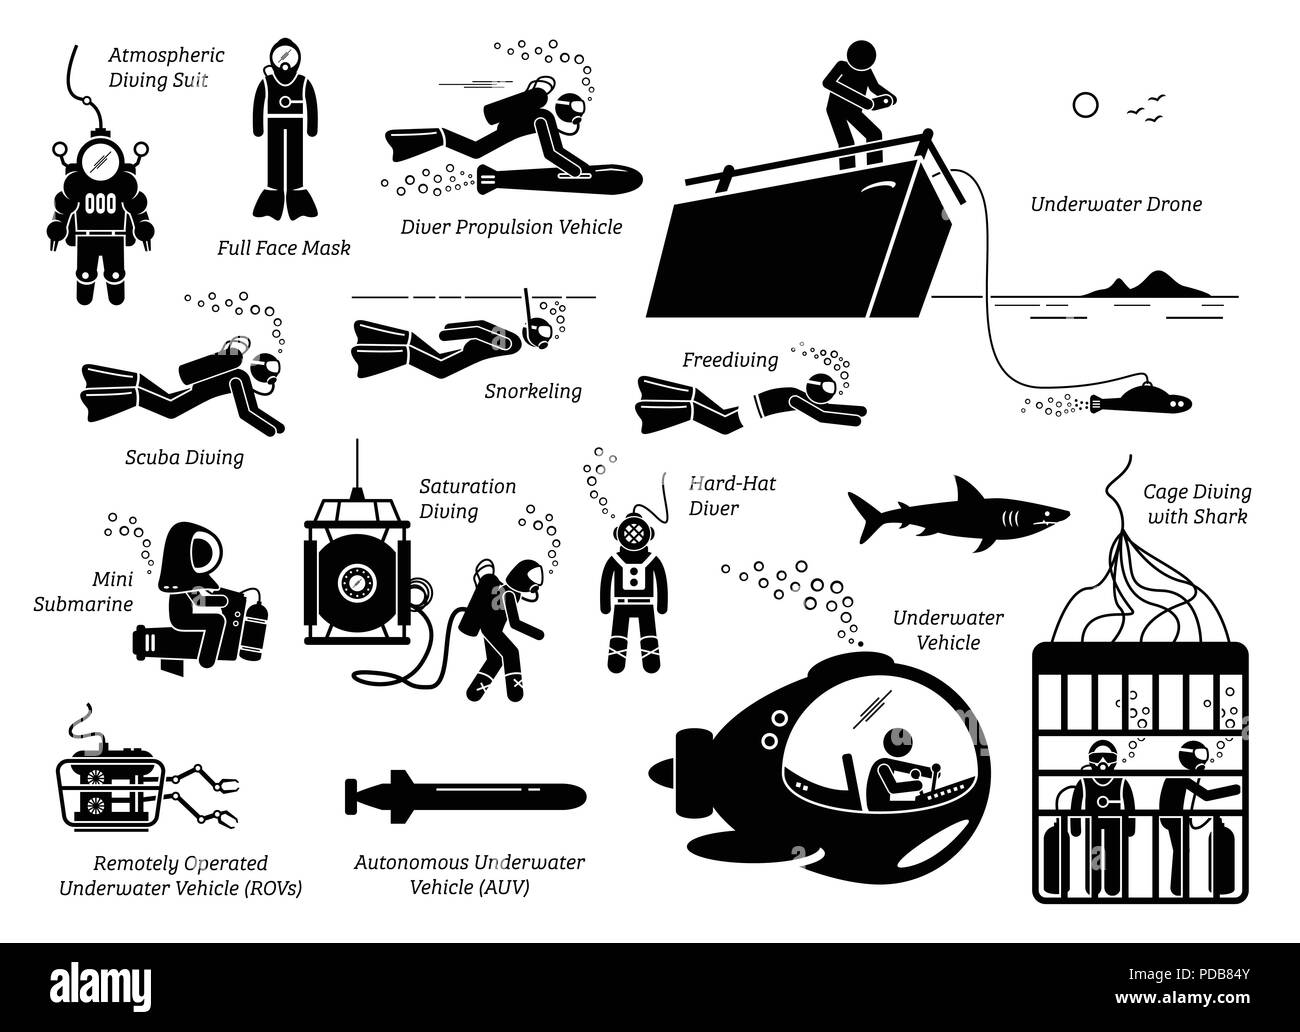 Arten von tauchen Modi ein. Abbildung zeigt die vielen Arten von Tauchanzügen, Werkzeuge, Methoden, Fahrzeuge und Unterwasser Taucher Technologie. Stock Vektor